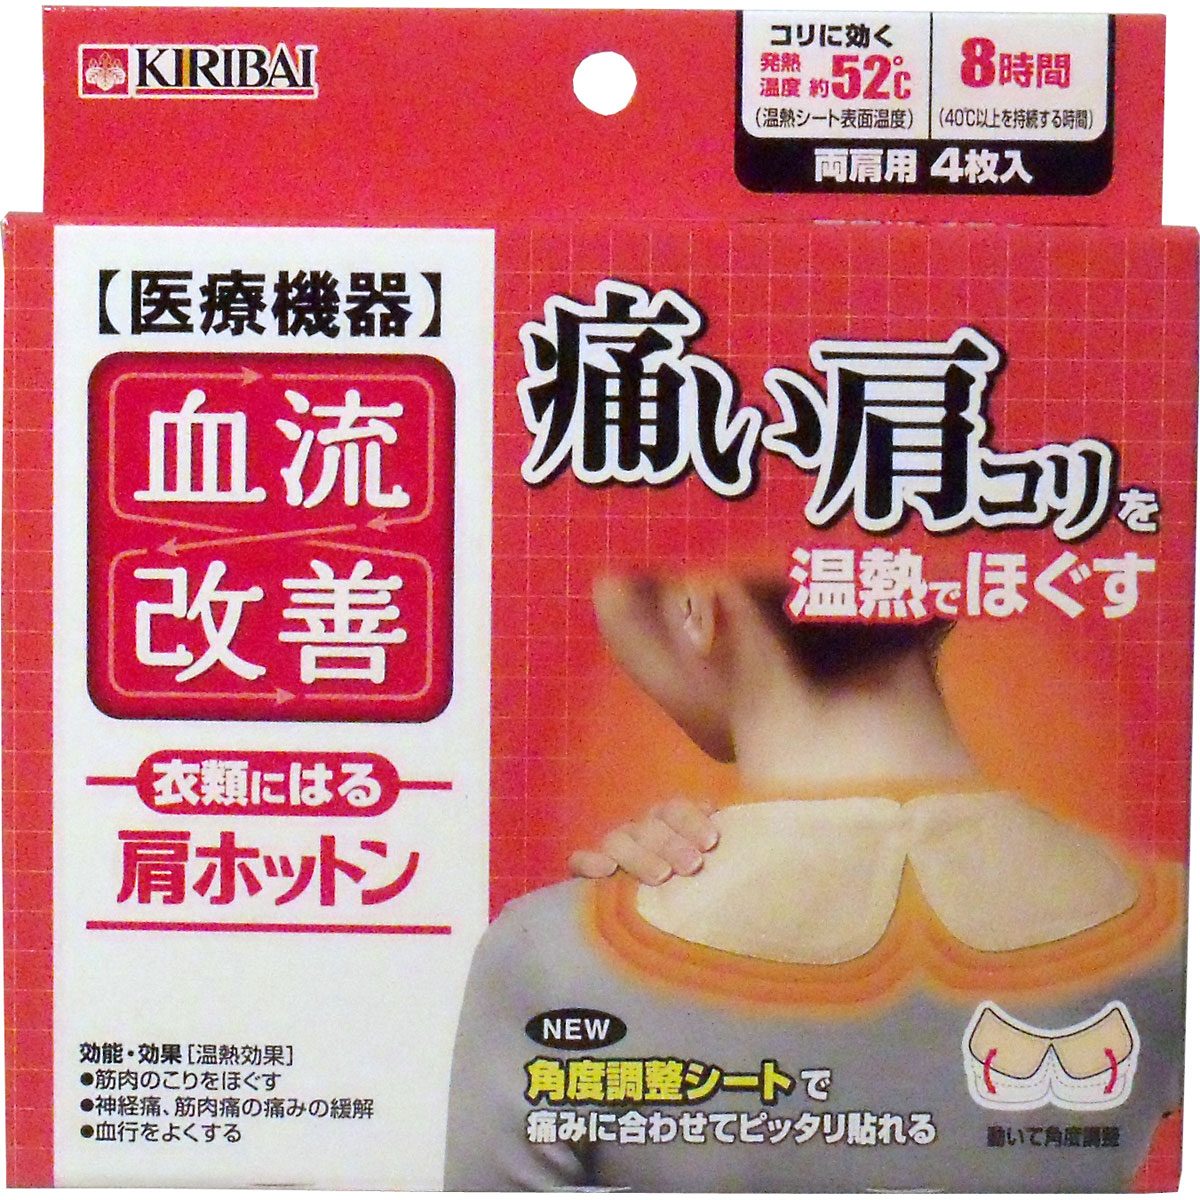 日本KIRIBAI桐灰出品 肩頸紓緩溫熱貼布 可調整角度 8小時